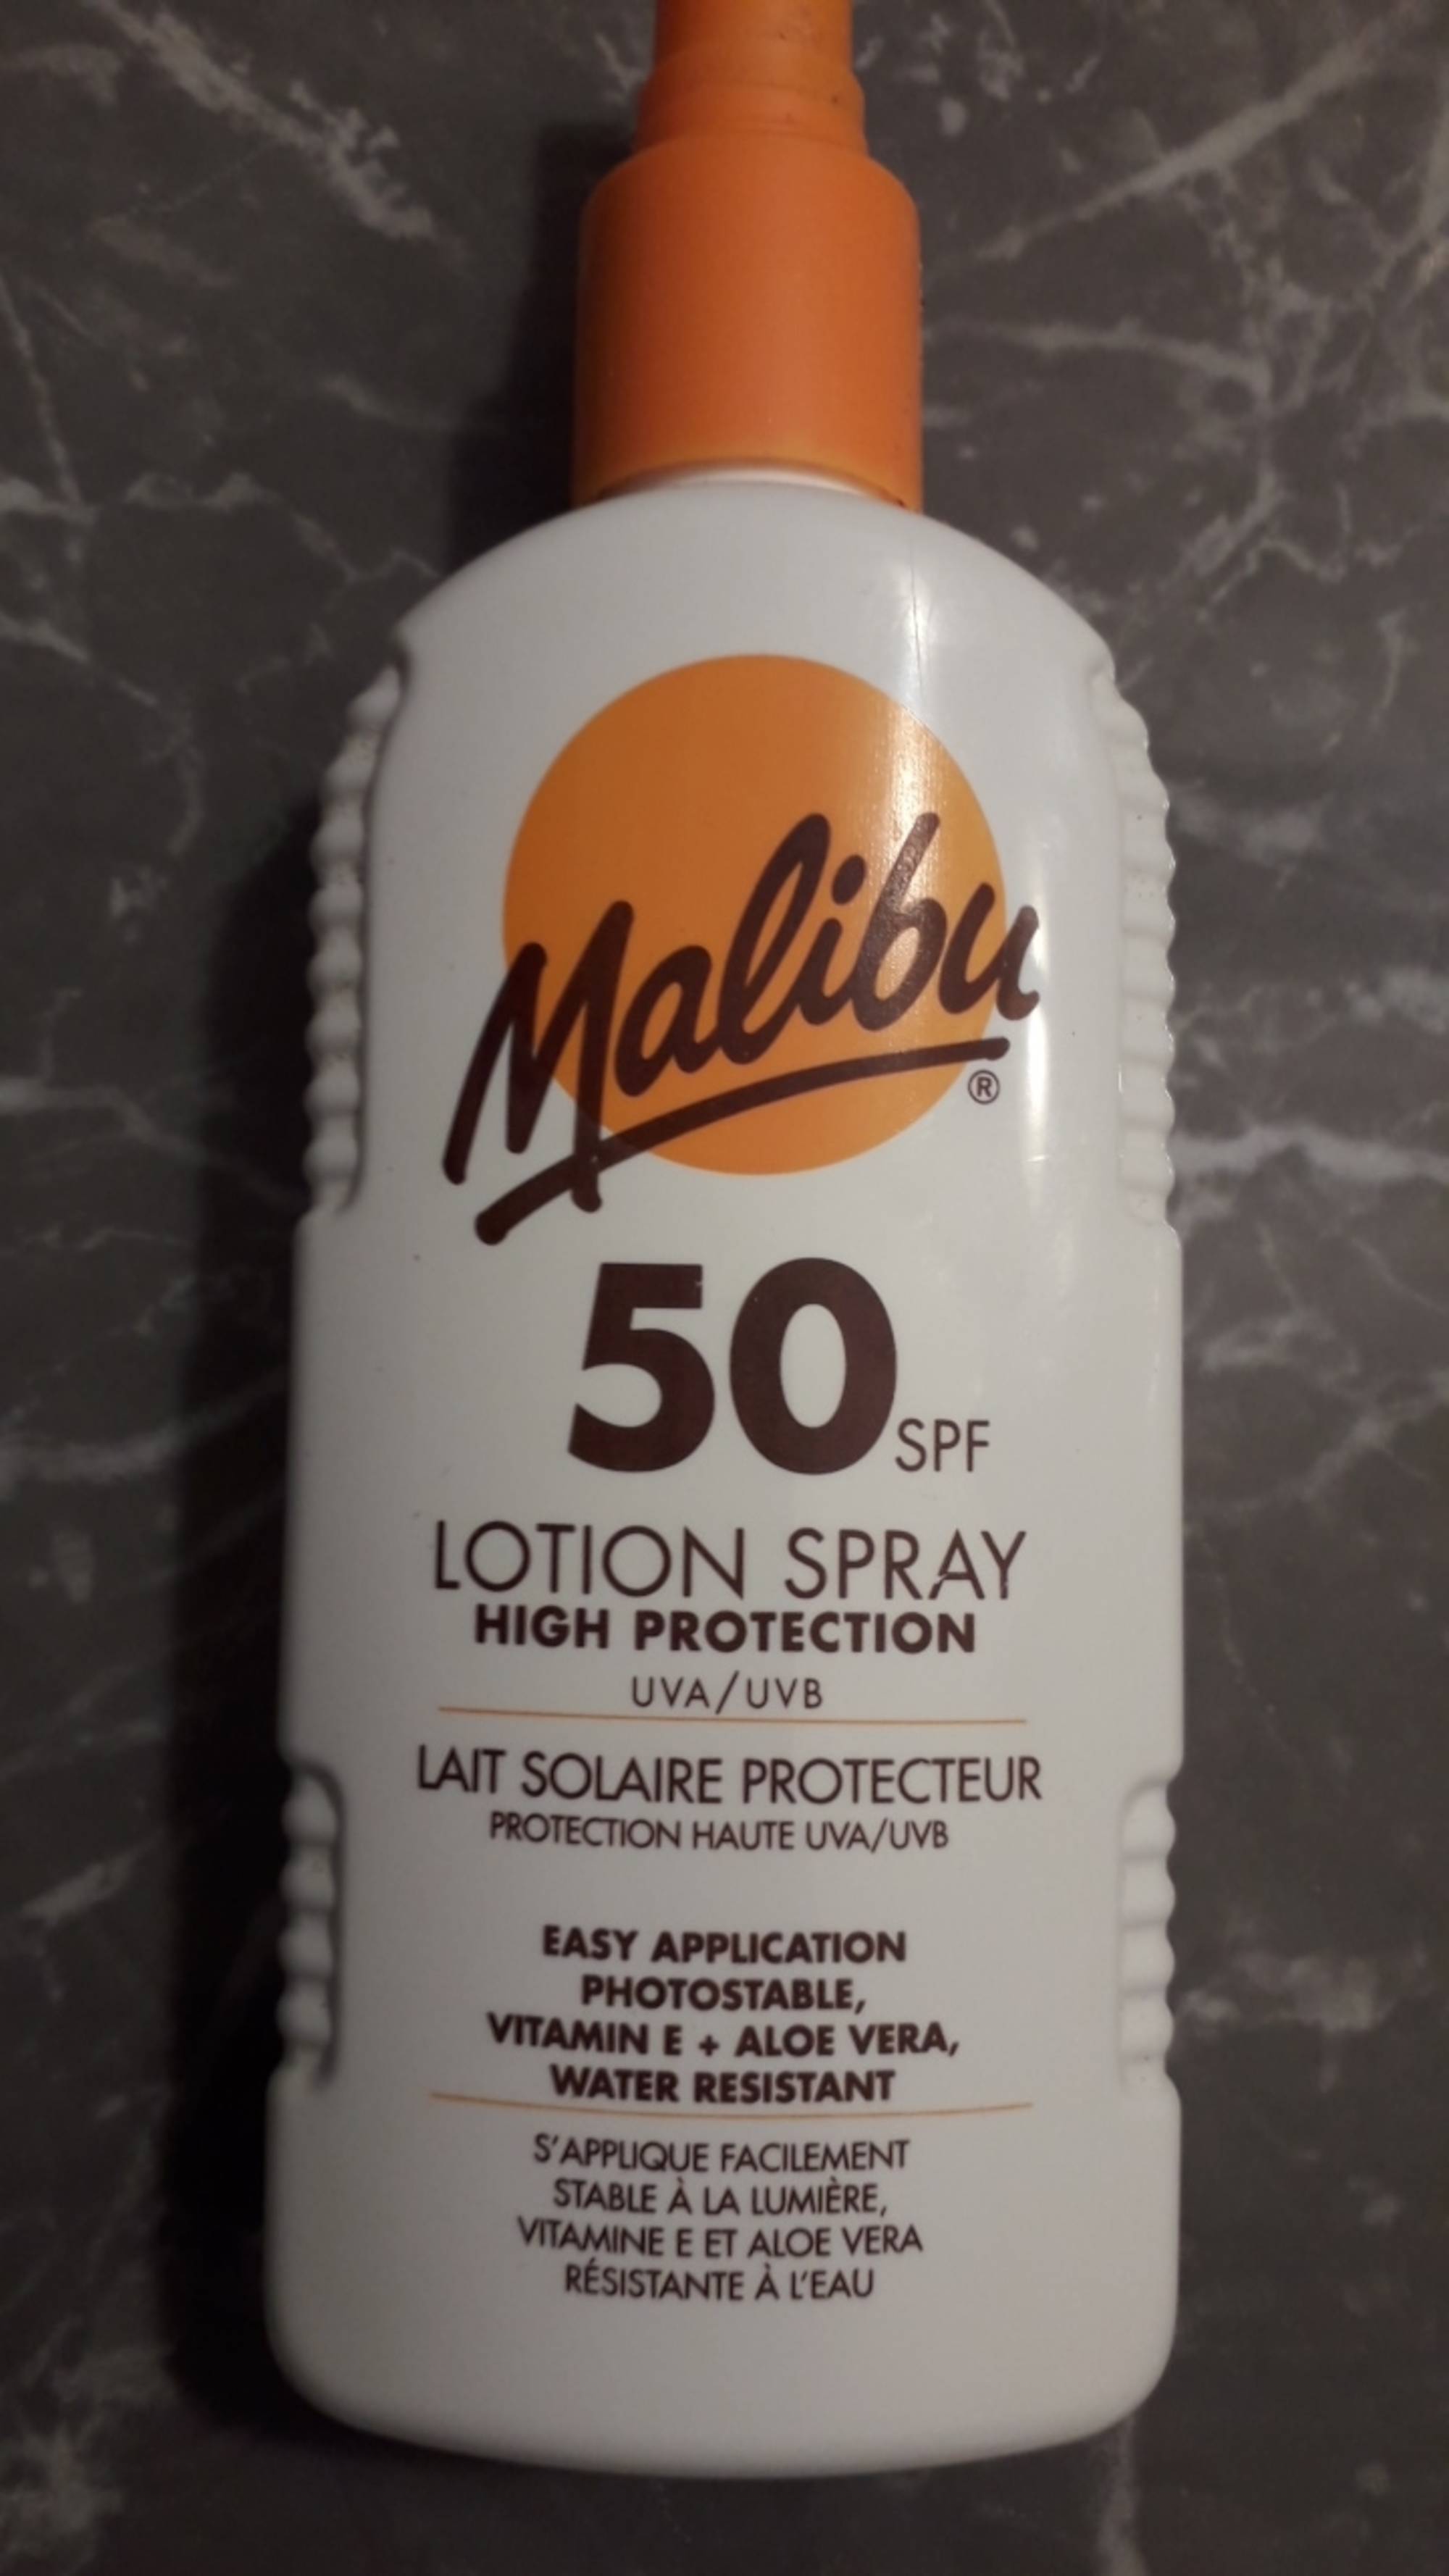 MALIBU - Lait solaire protecteur SPF 50